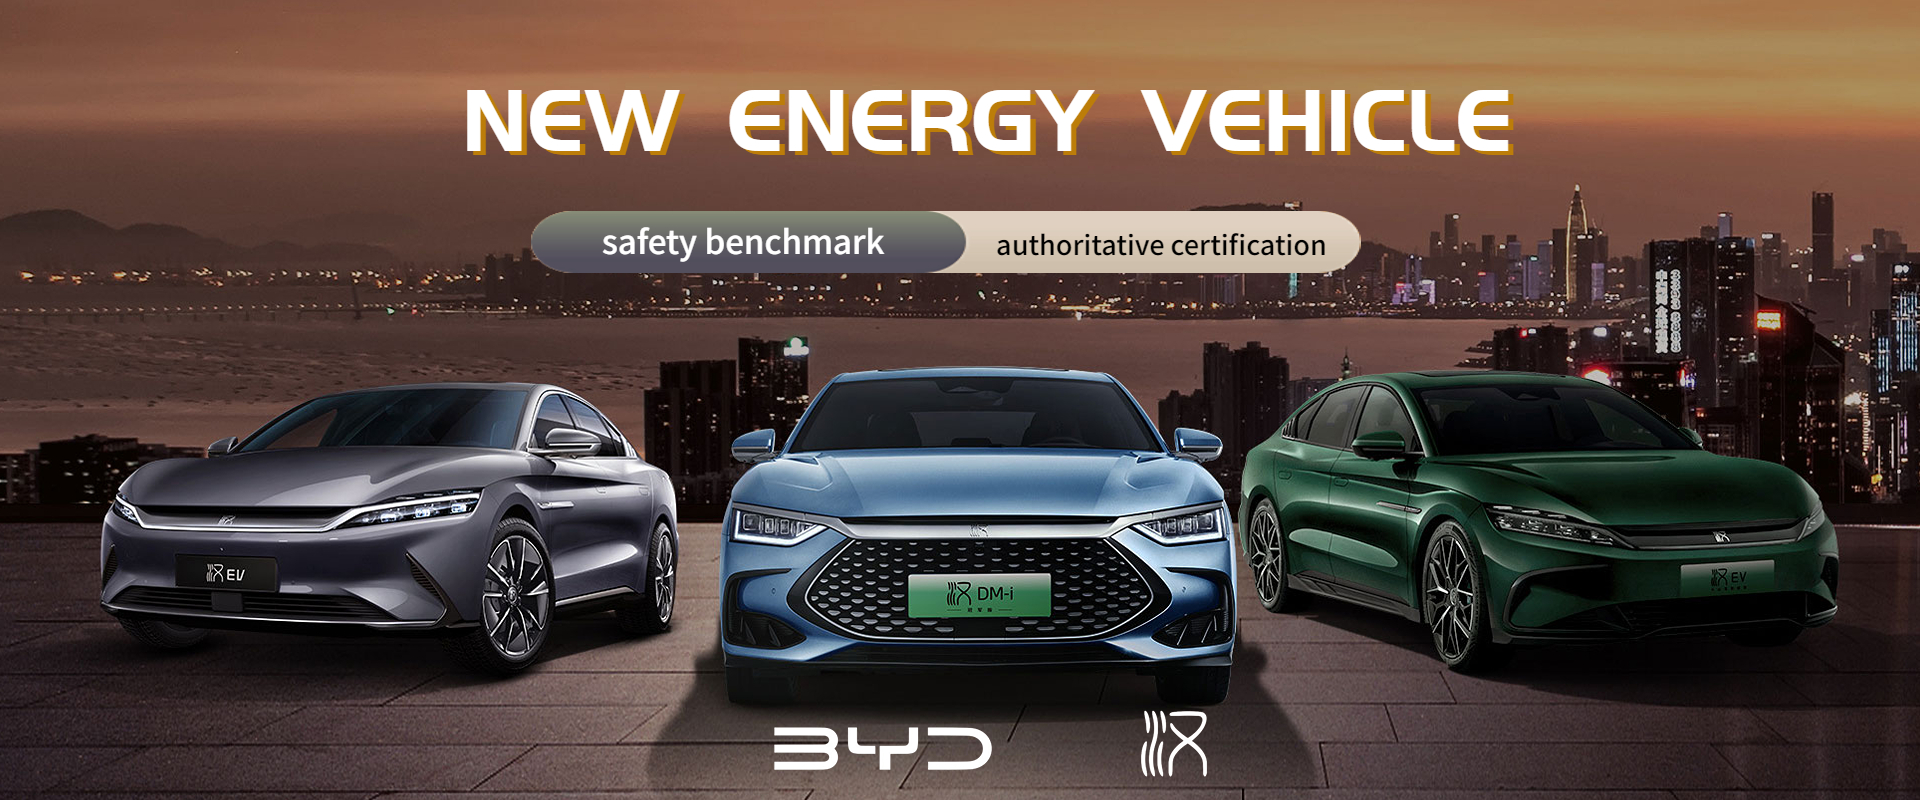 energy-saving new energy vehicle